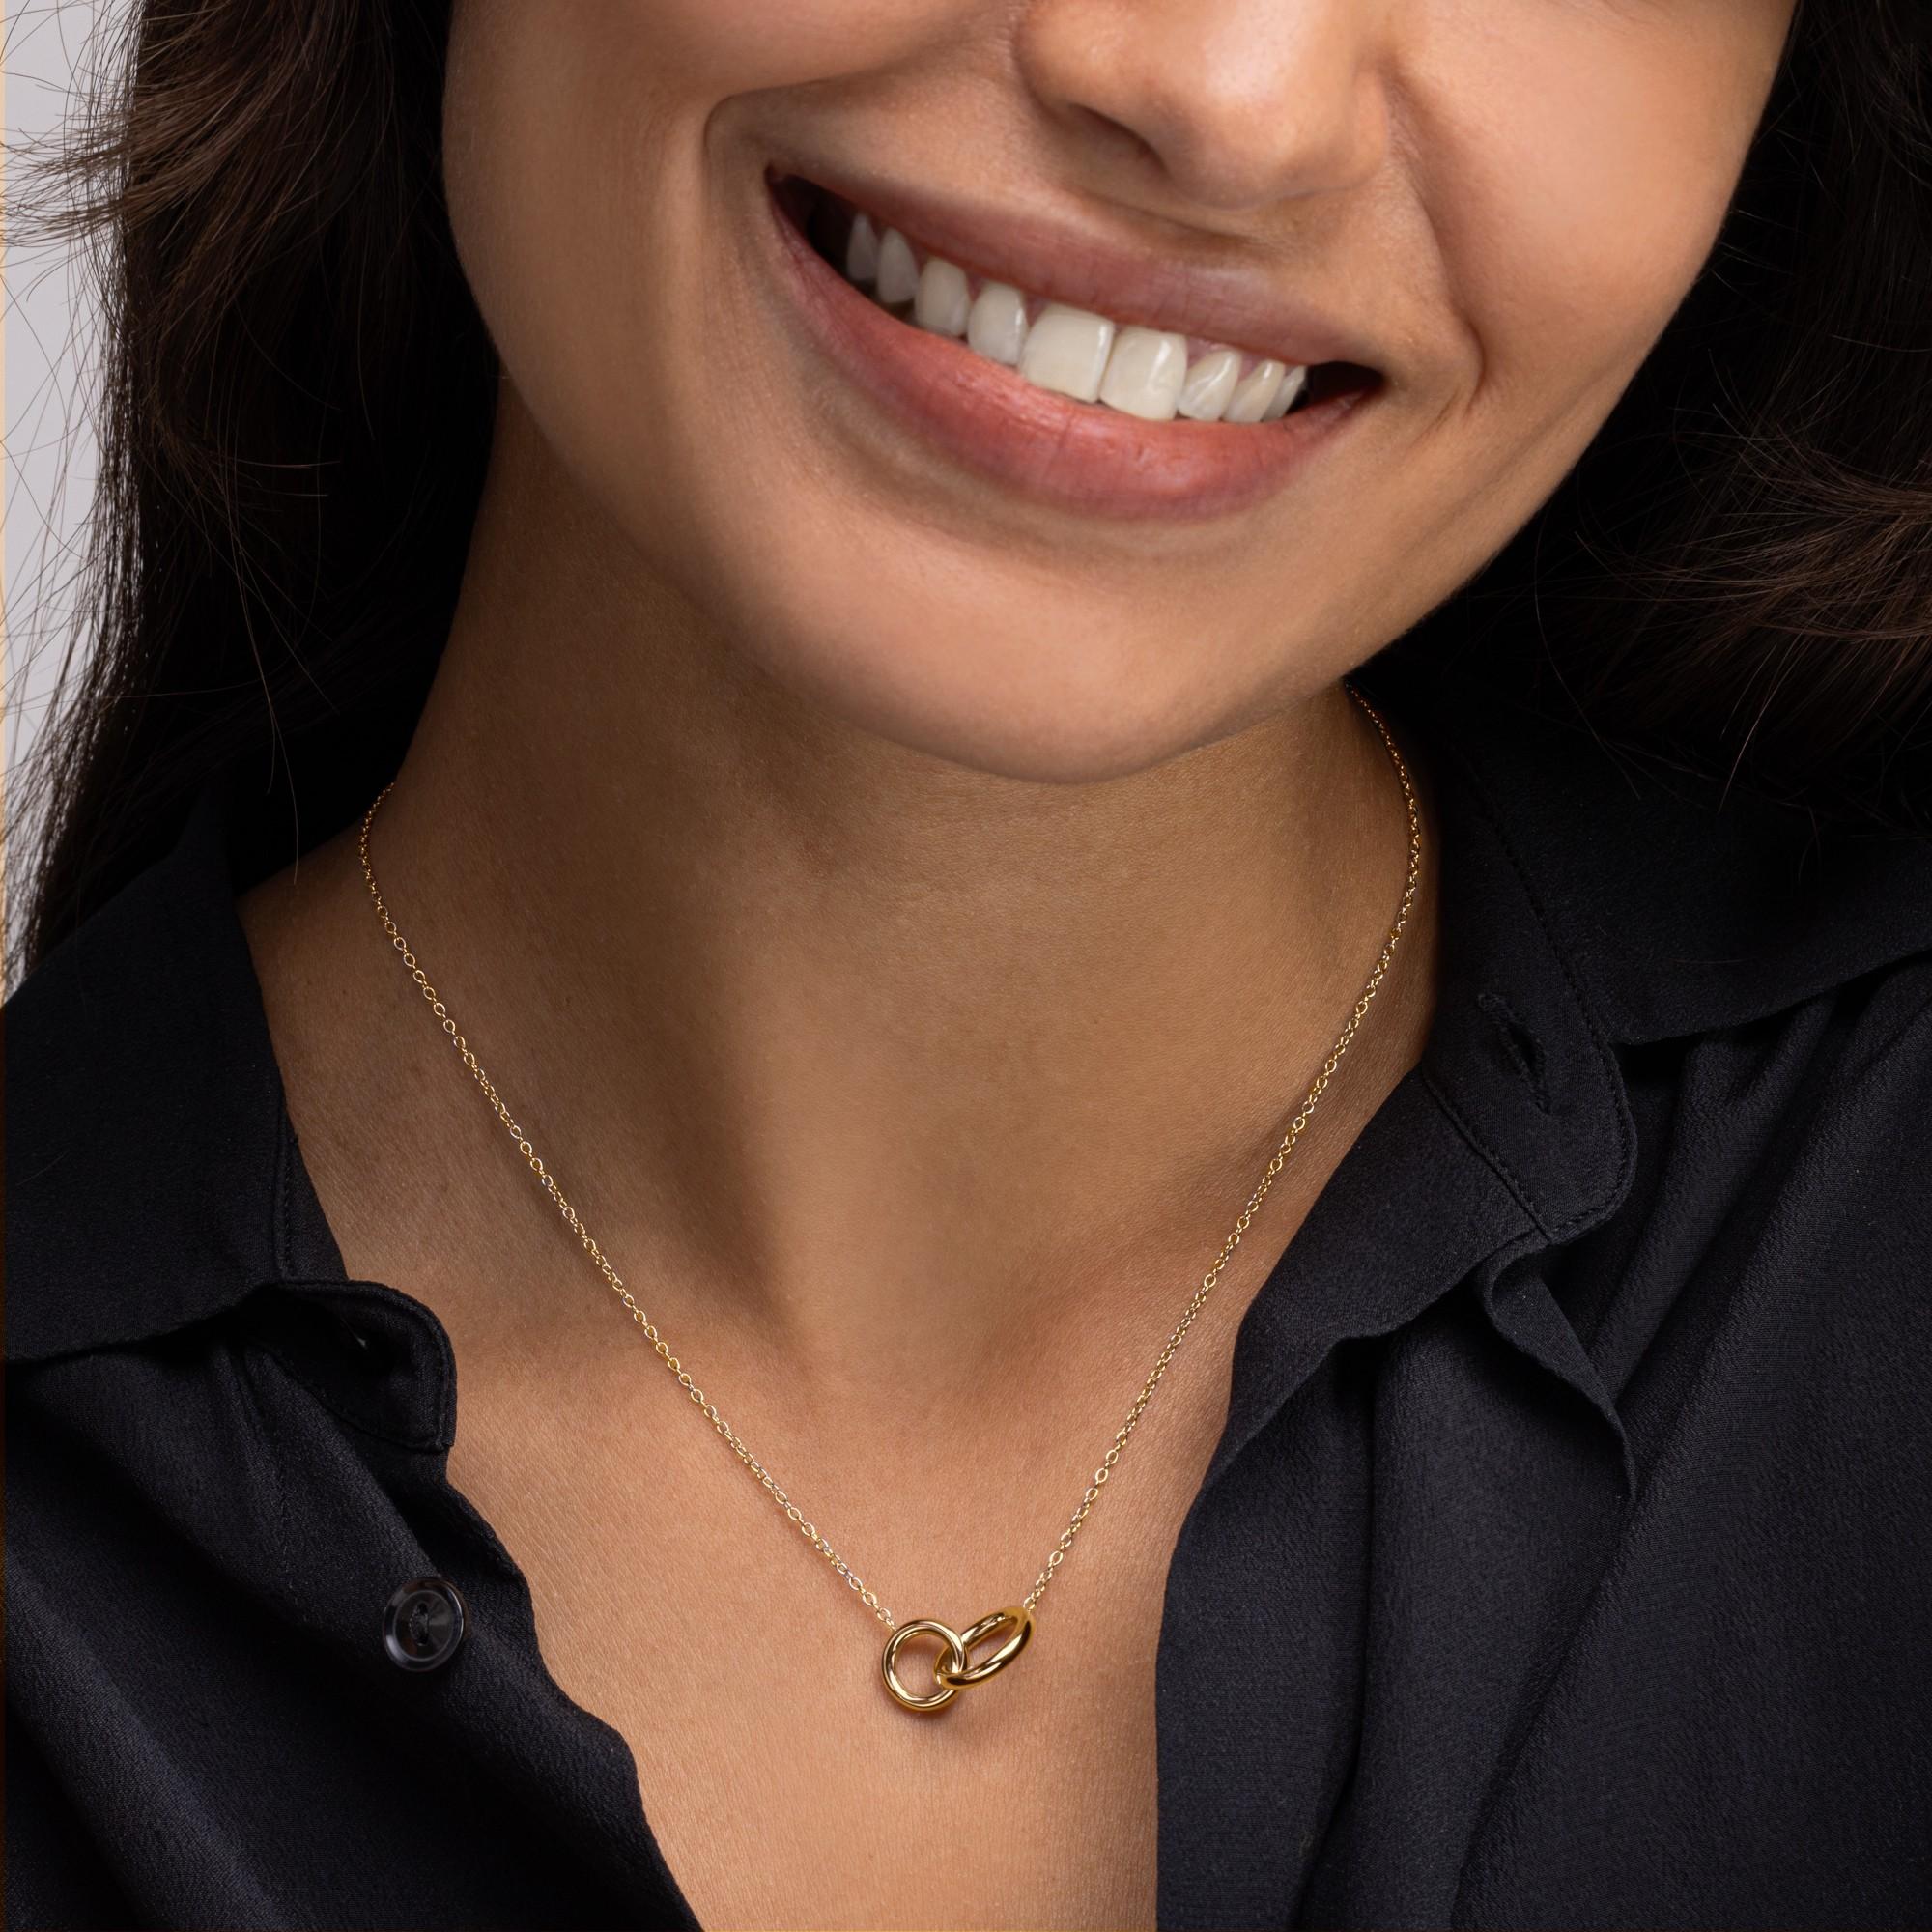 Alex Jona Design-Kollektion, handgefertigt in Italien, Halskette aus 18 Karat Gelbgold mit ineinander greifenden Reifen.

Die Juwelen von Alex Jona zeichnen sich nicht nur durch ihr besonderes Design und die hervorragende Qualität der Edelsteine